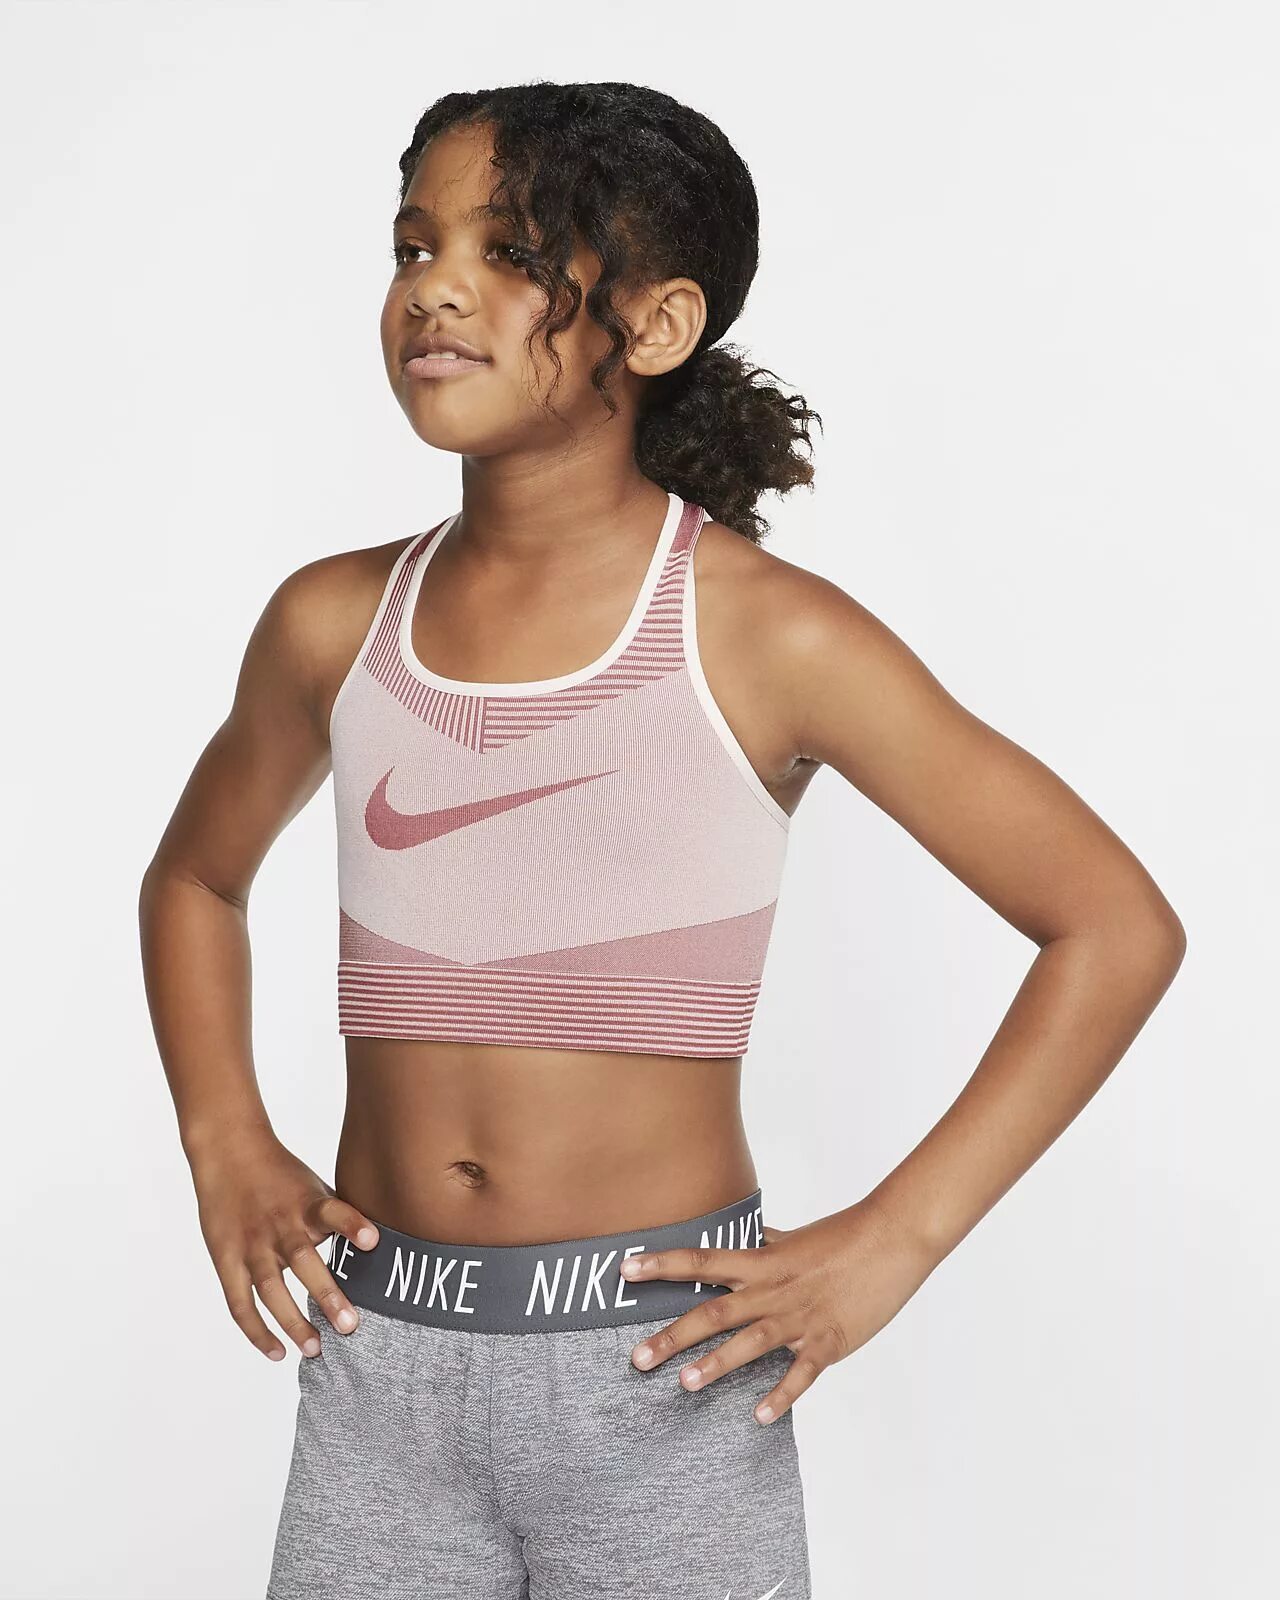 Топик 11 лет. Спортивный топ бра Nike. Спортивный топ для девочки. Топик для девочки 12. Топик для девочки 10 лет.